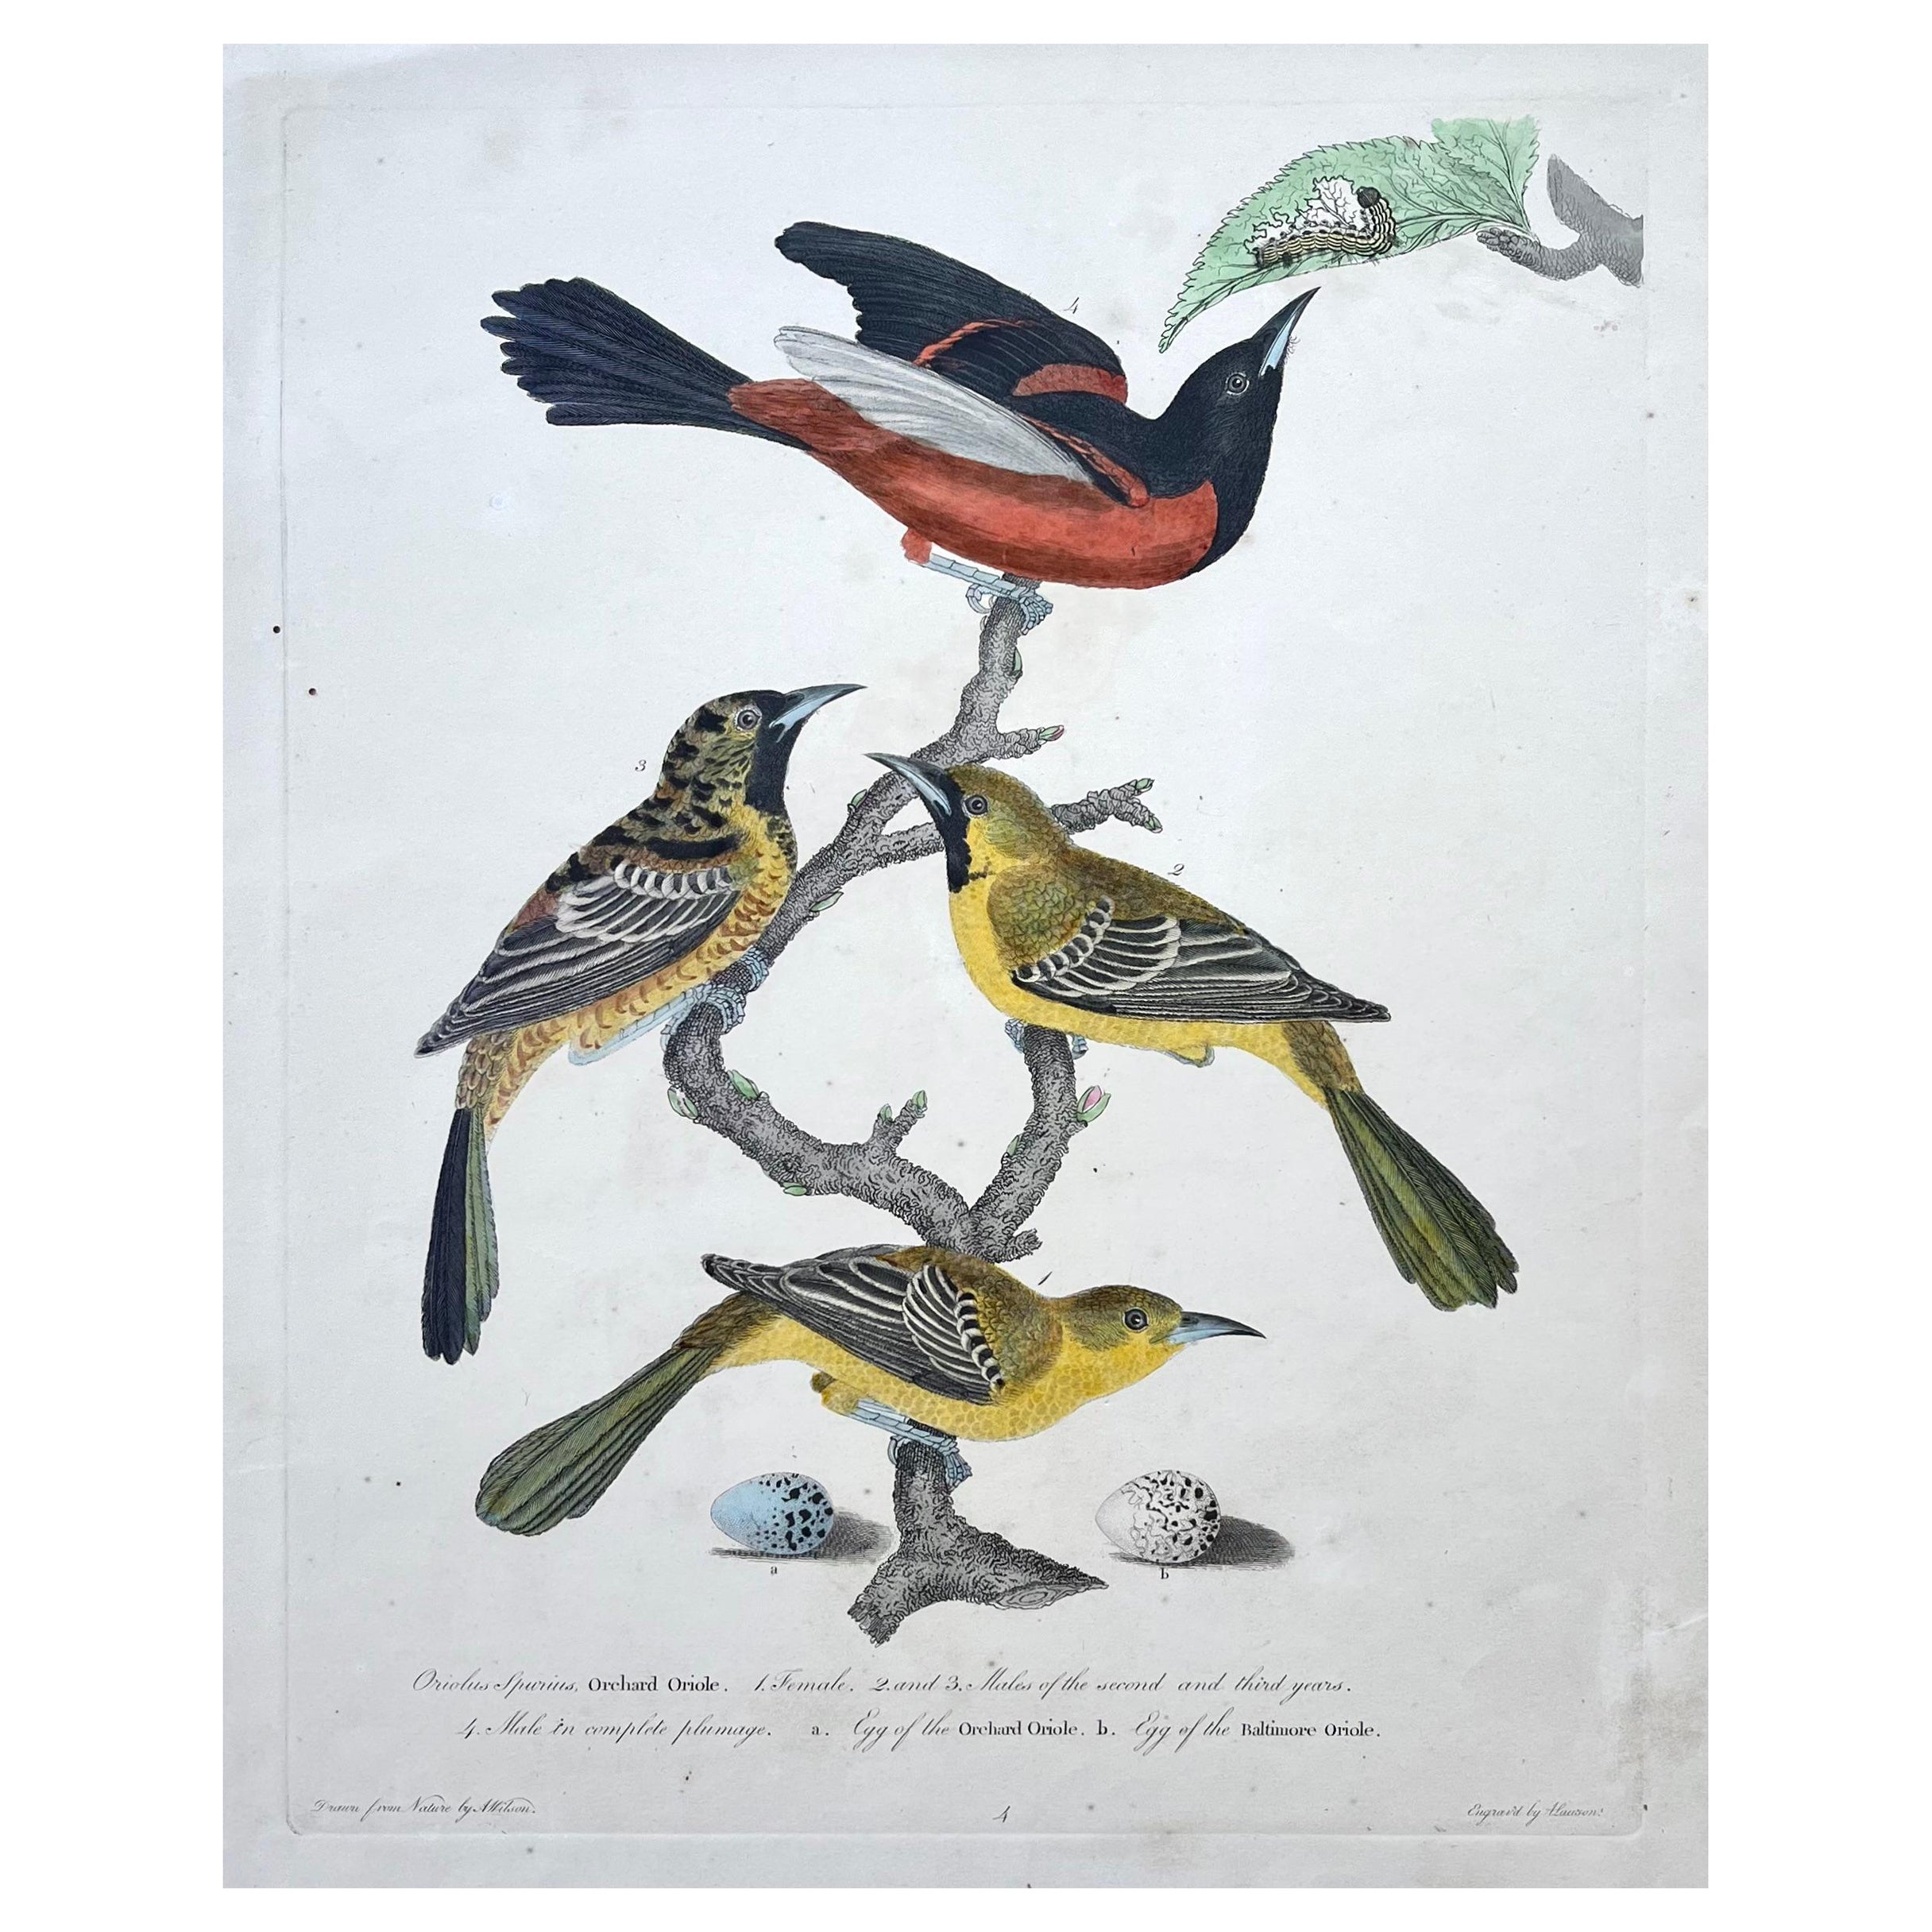 Druck von Oriolen aus dem frühen 19. Jahrhundert von Alexander Wilson aus der amerikanischen Ornithologie